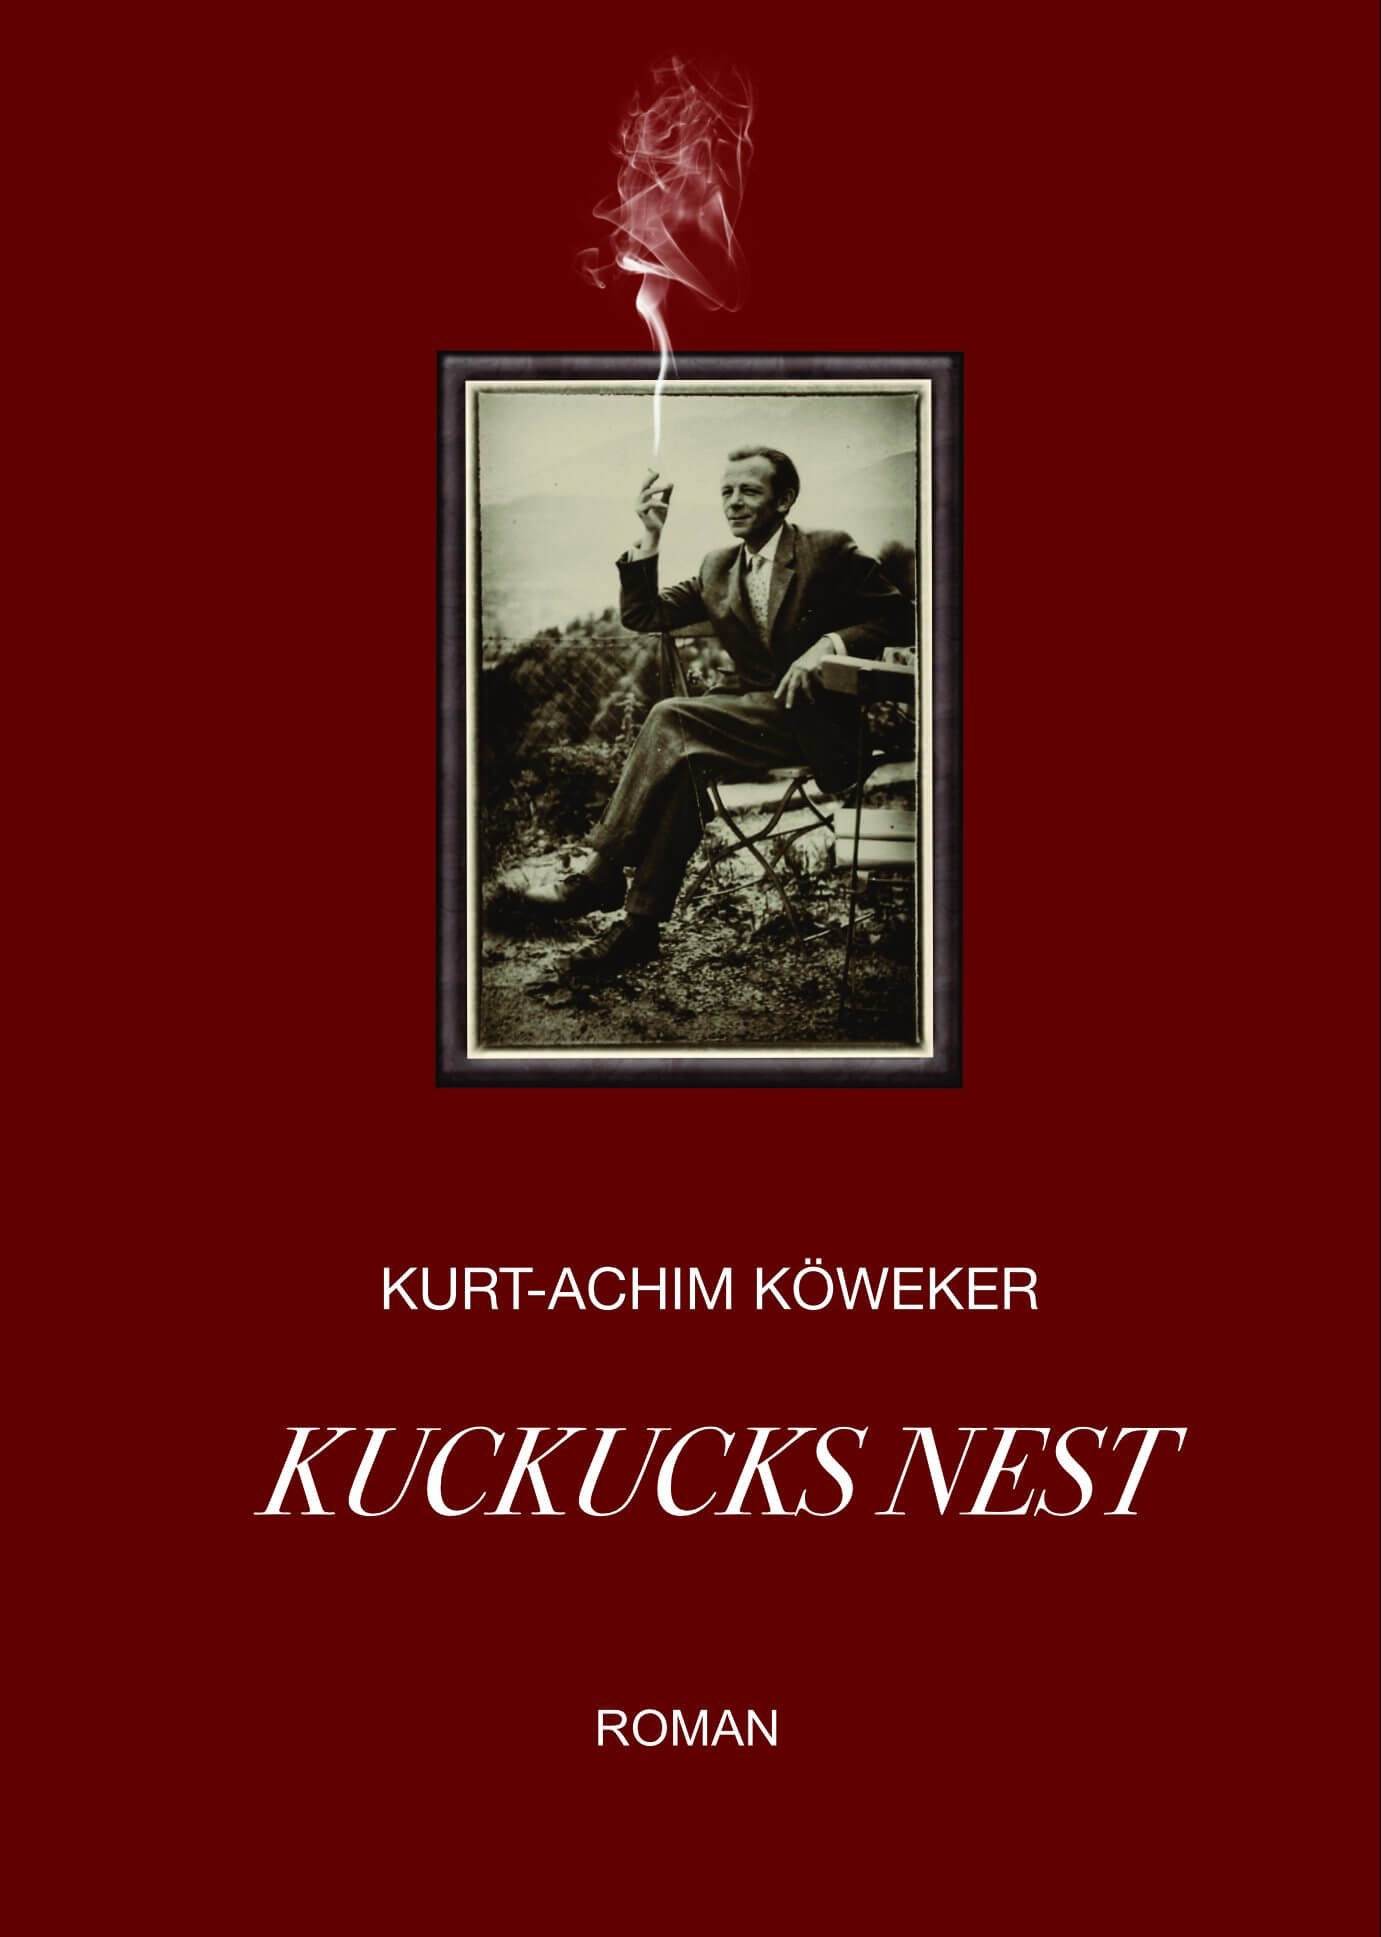 Roman-Cover-Kuckus-Nest